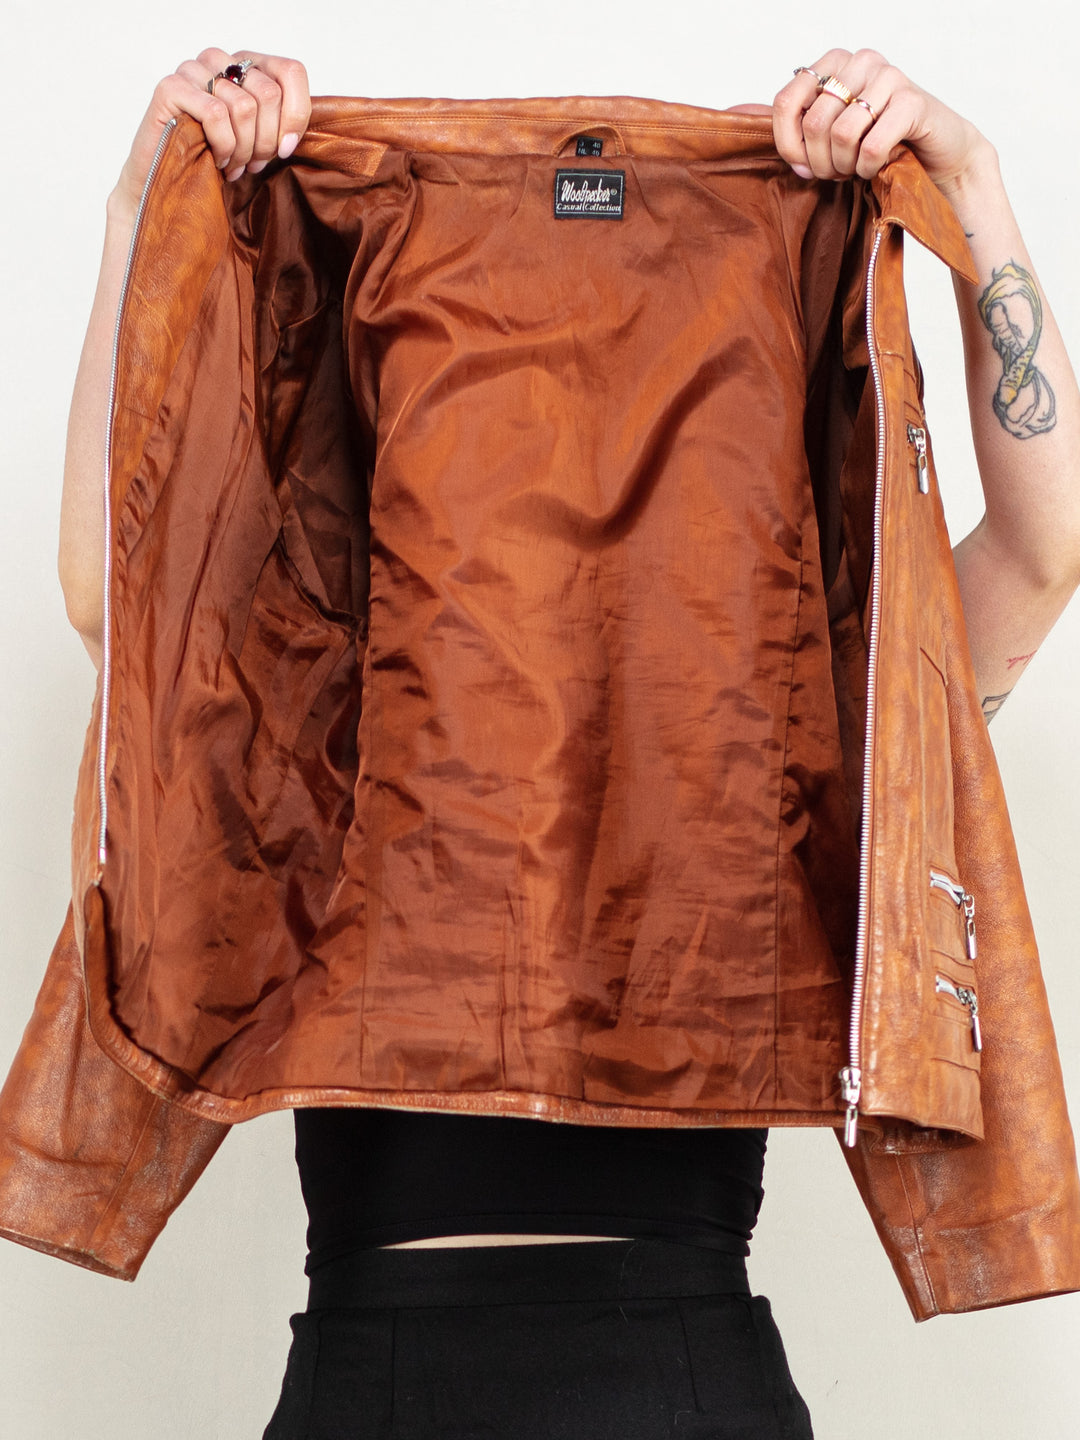 Leather Bomber Jacket 80s vintage women bomber jacket biker leather jacket zip up motorcycle edgy grunge streetwear punk style size large L